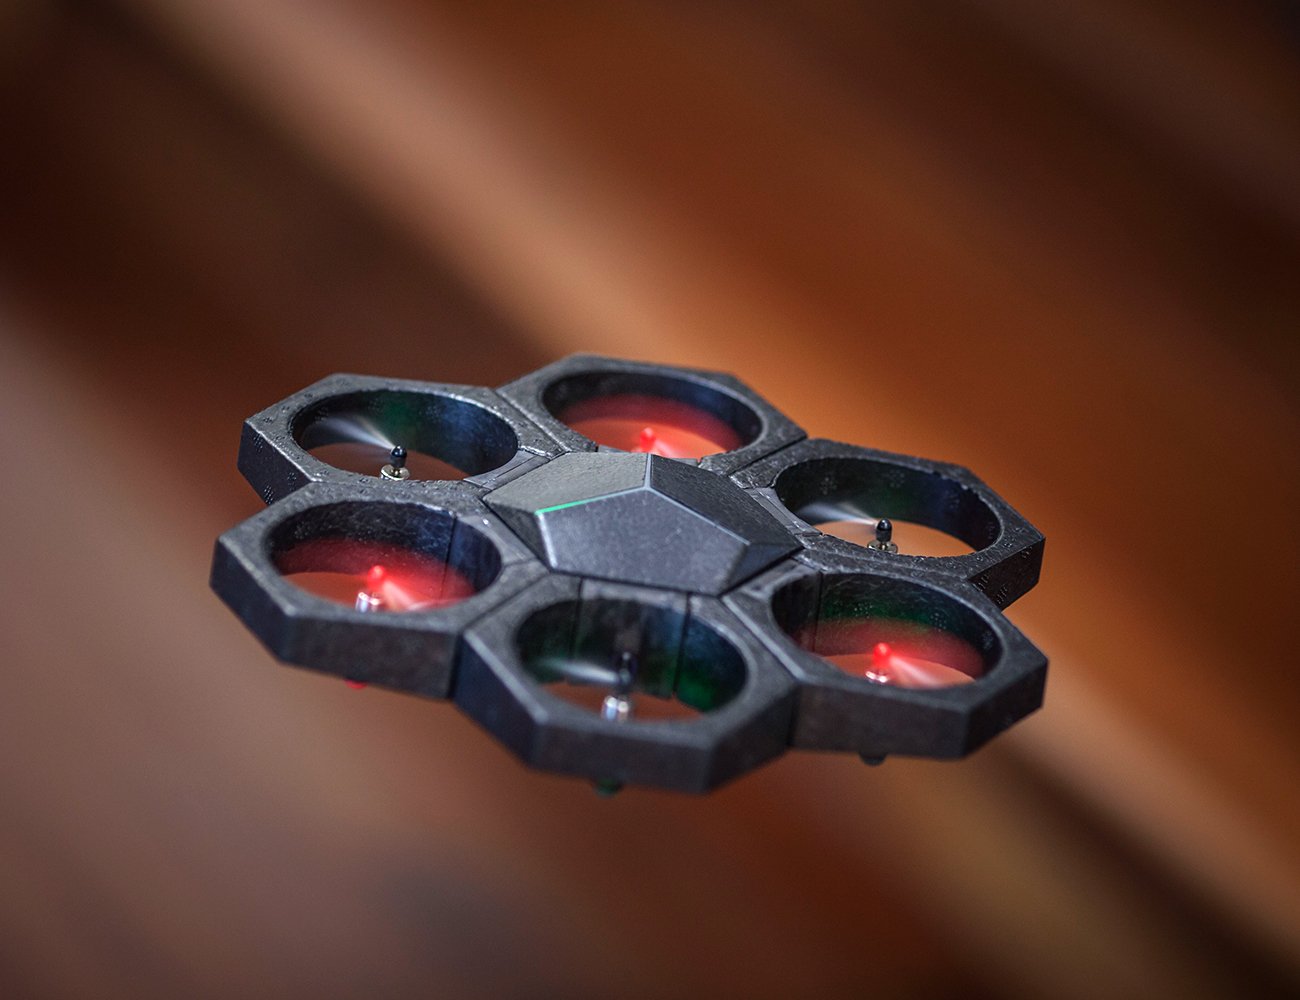 Le nouveau drone de Makeblock